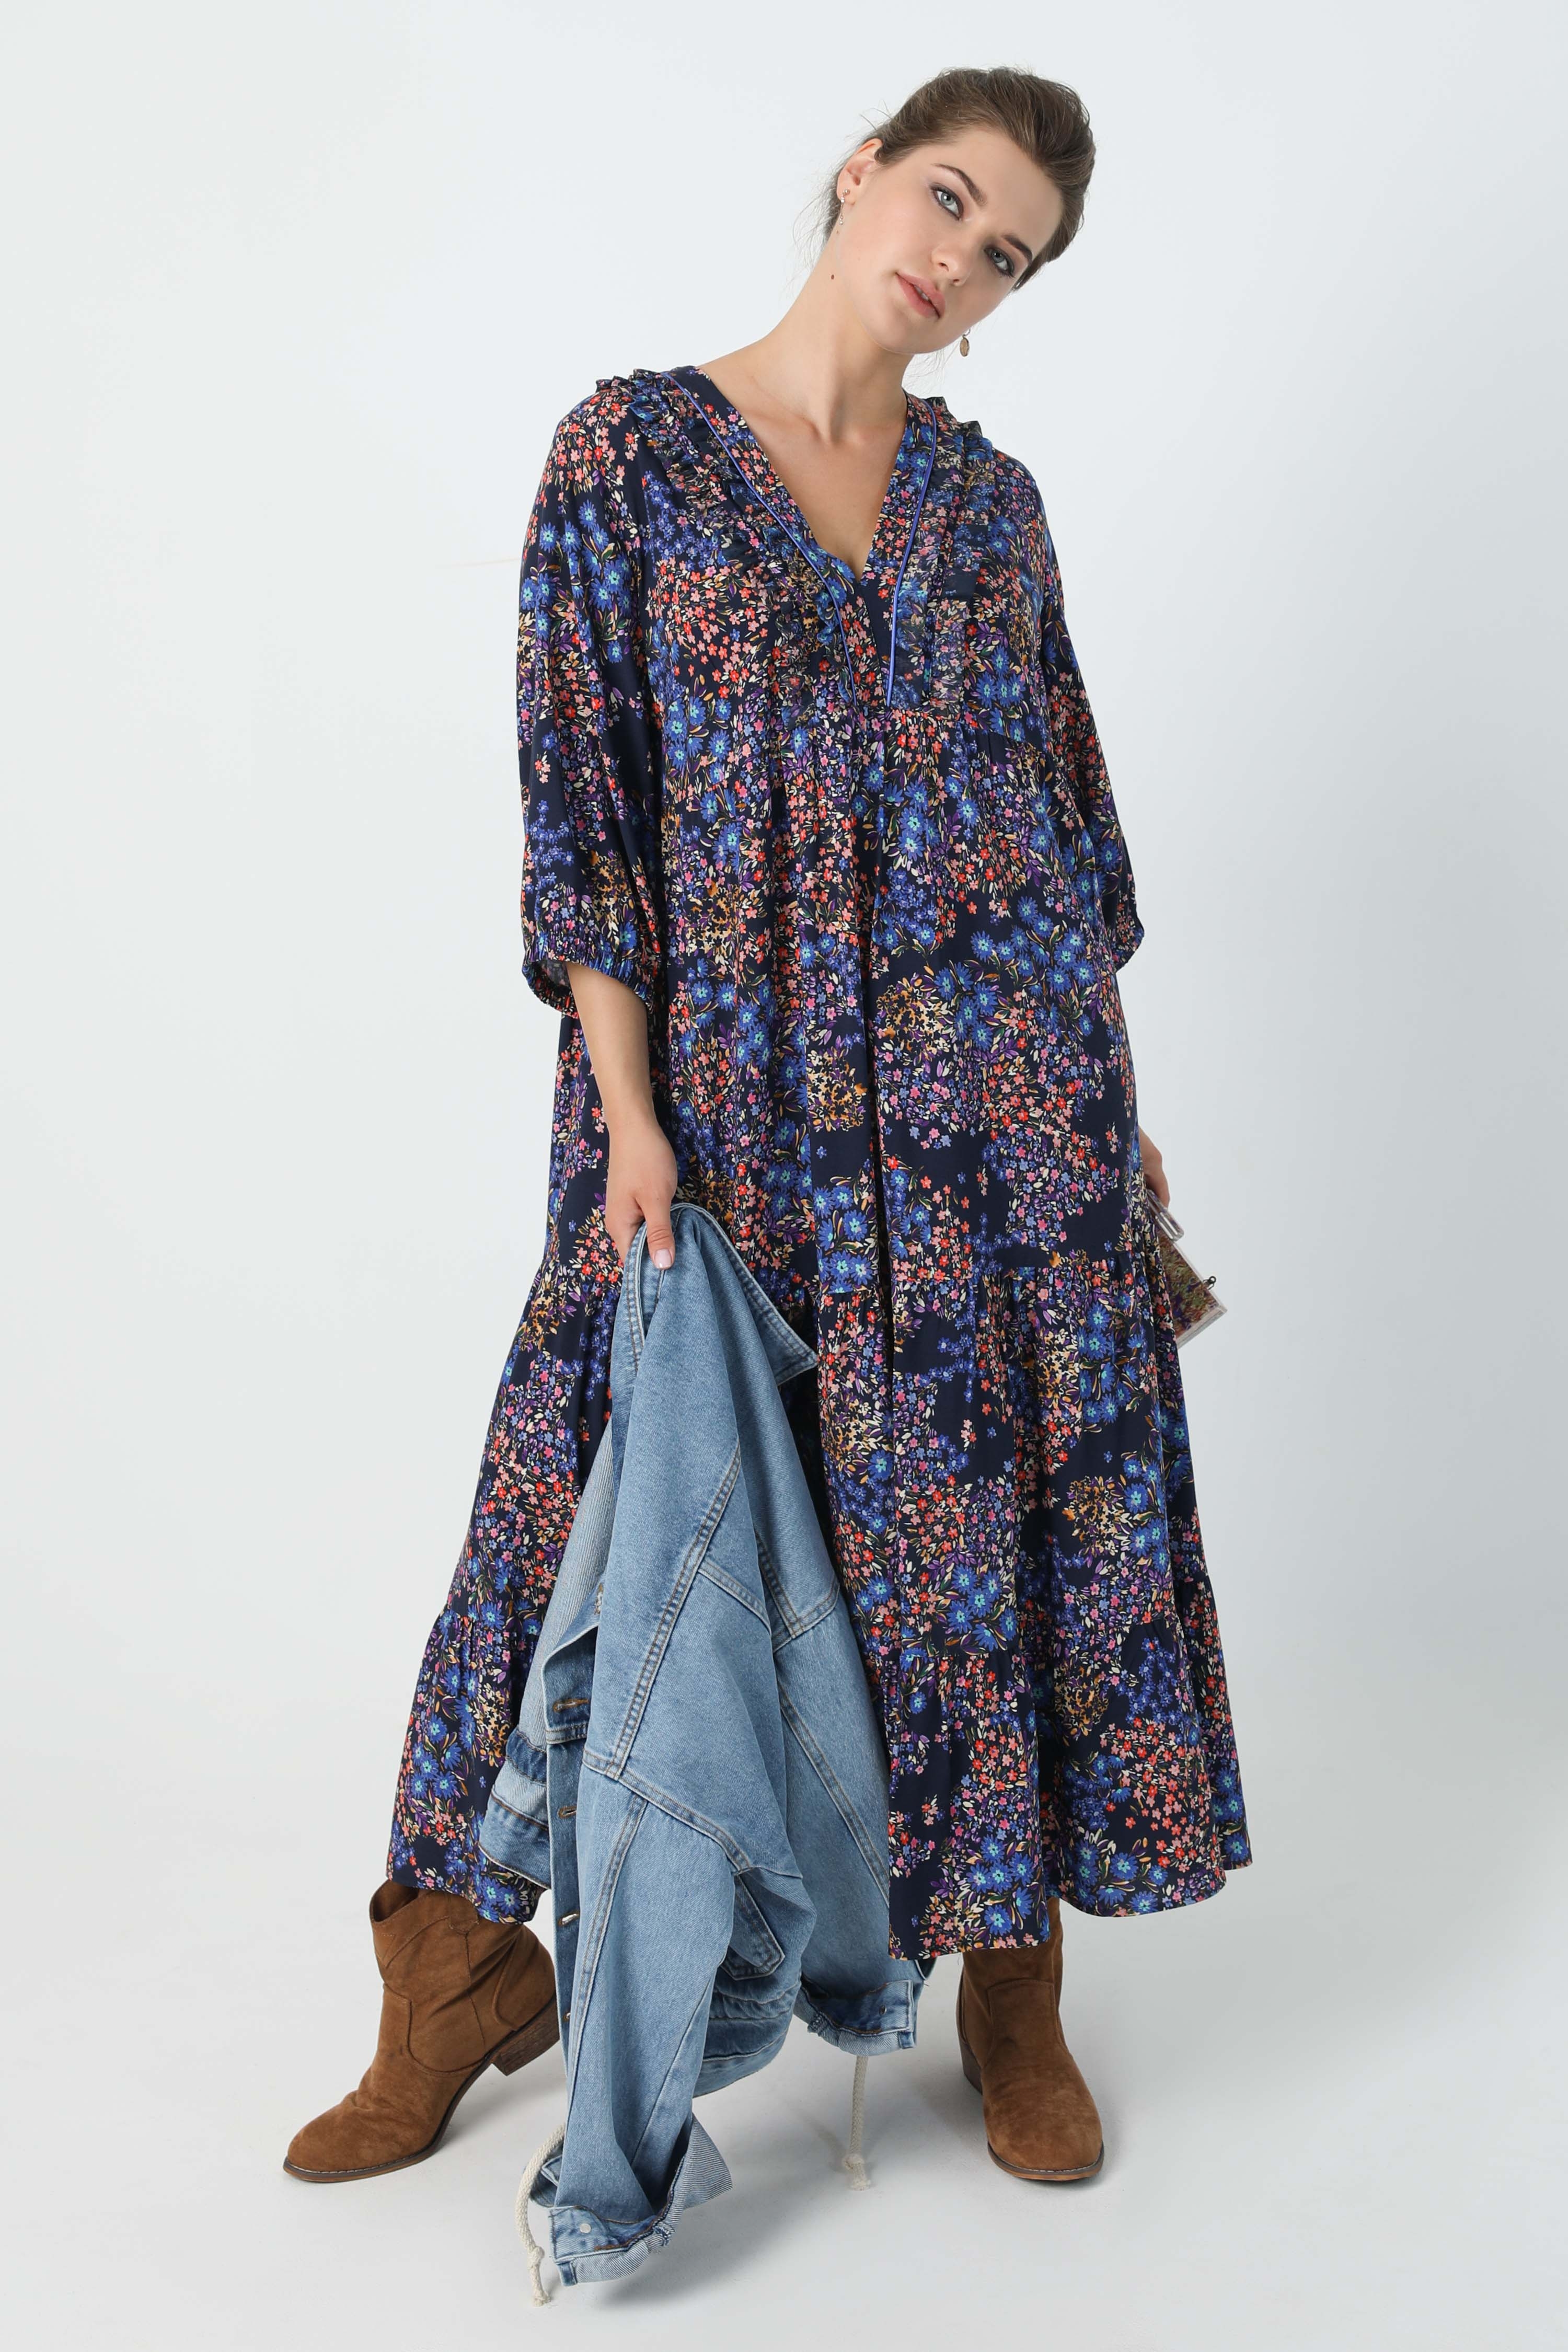 Robe longue bohème impression floral tissu éco-responsable - JMP - Jean  Marc Philippe - Vêtements grande taille femme